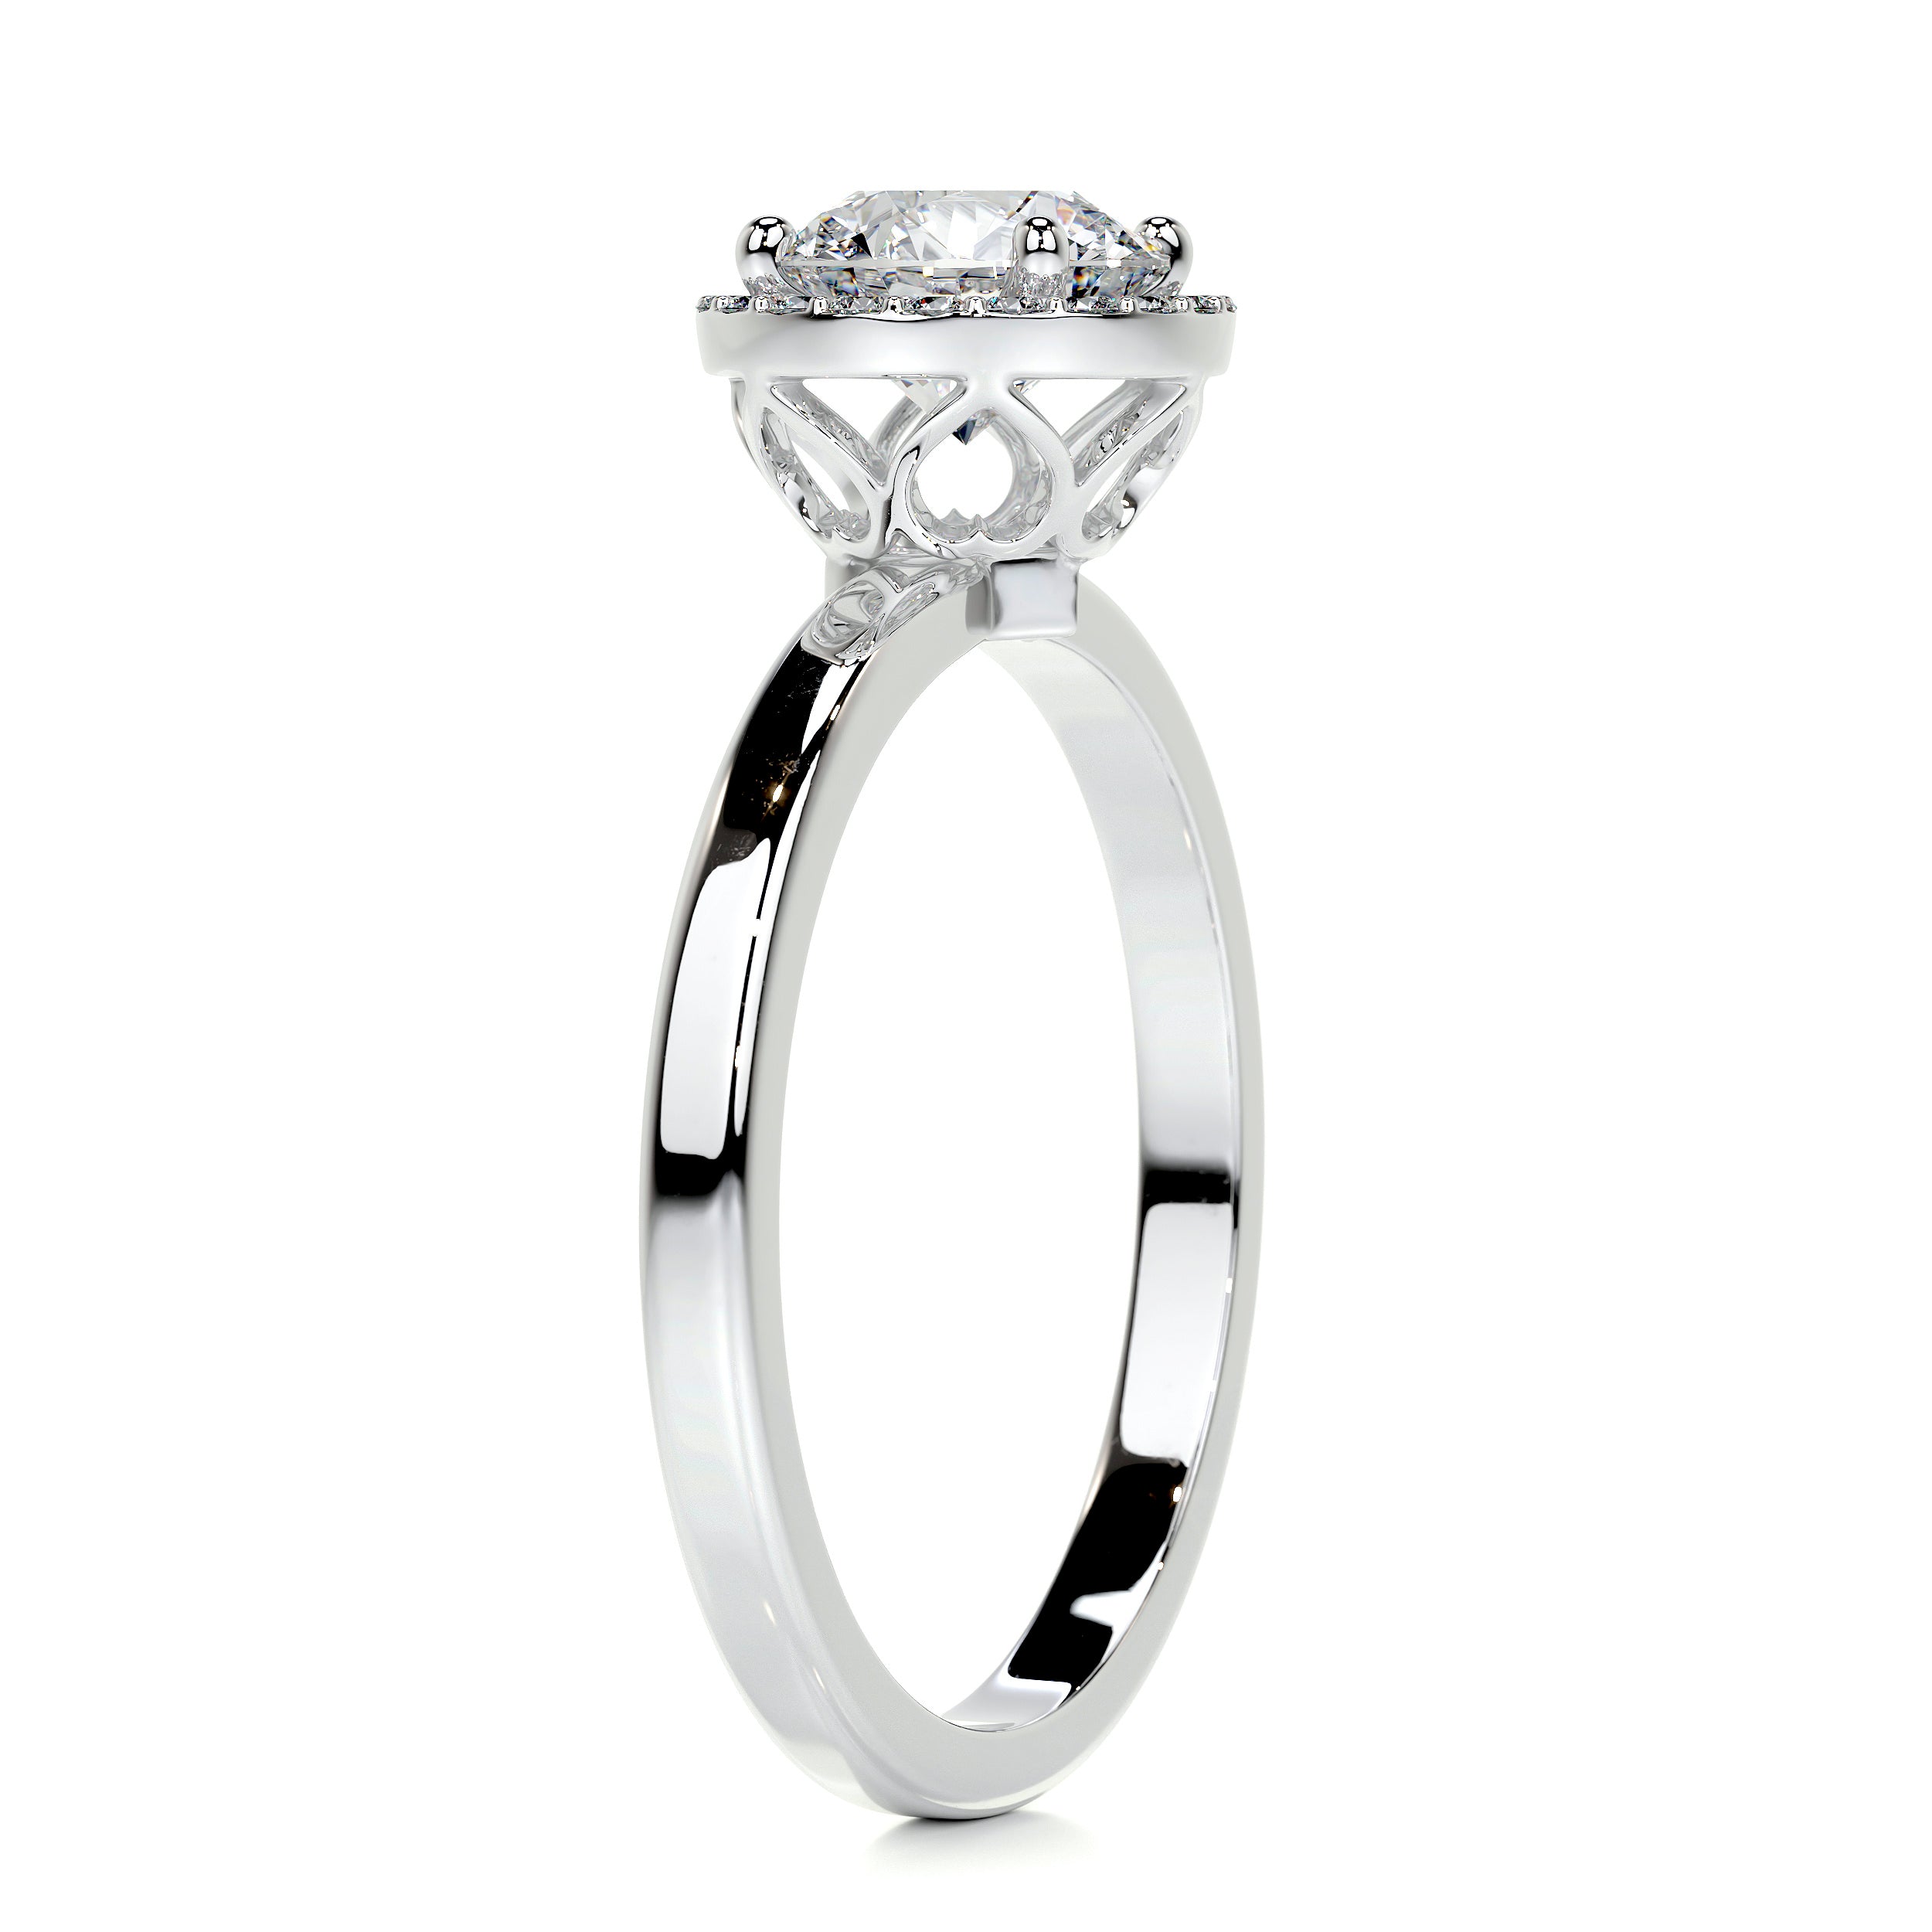 Anne Moissanite & Diamonds Ring   (1.10 Carat) -14K White Gold